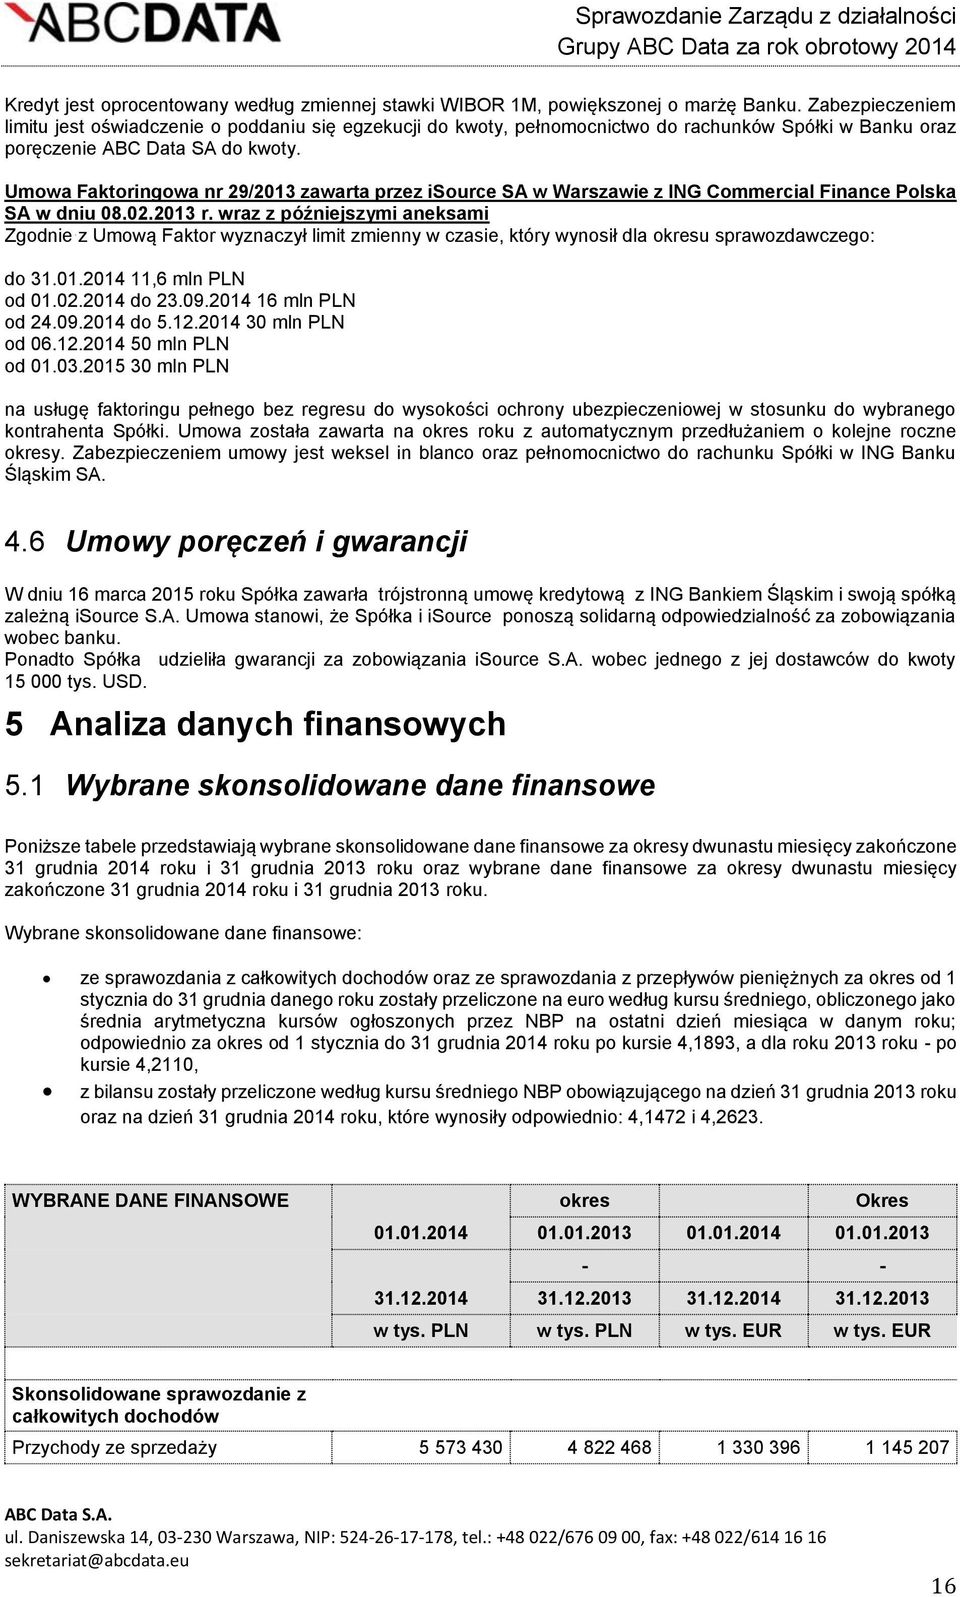 Umowa Faktoringowa nr 29/2013 zawarta przez isource SA w Warszawie z ING Commercial Finance Polska SA w dniu 08.02.2013 r.